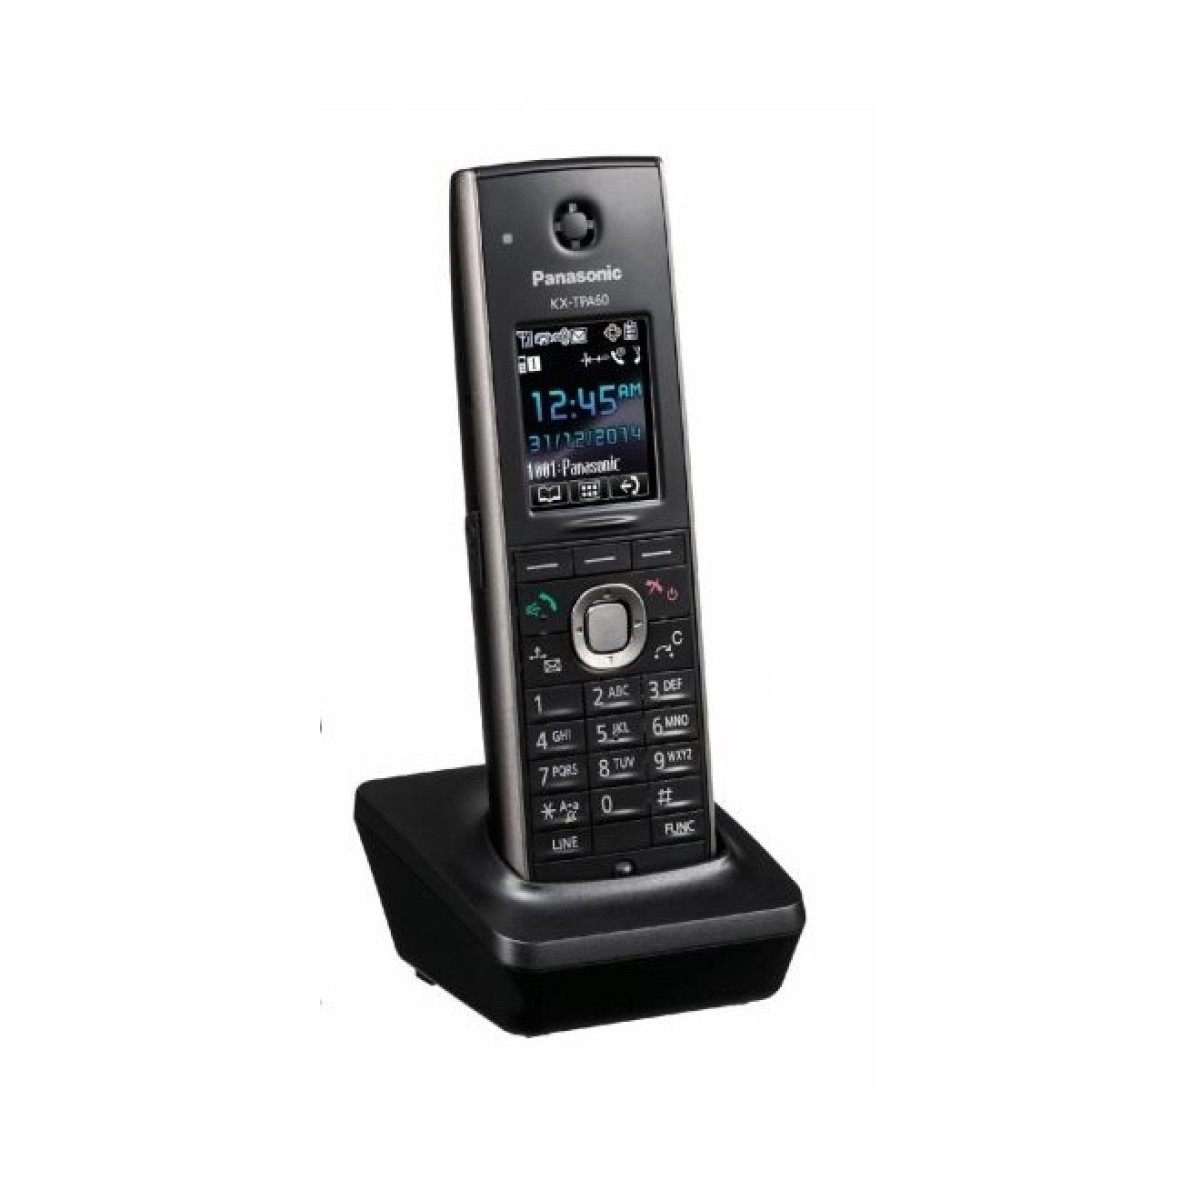 Додаткова слухавка Panasonic KX-TPA60RUB для IP-DECT телефону KX-TGP600RUB 256_256.jpg